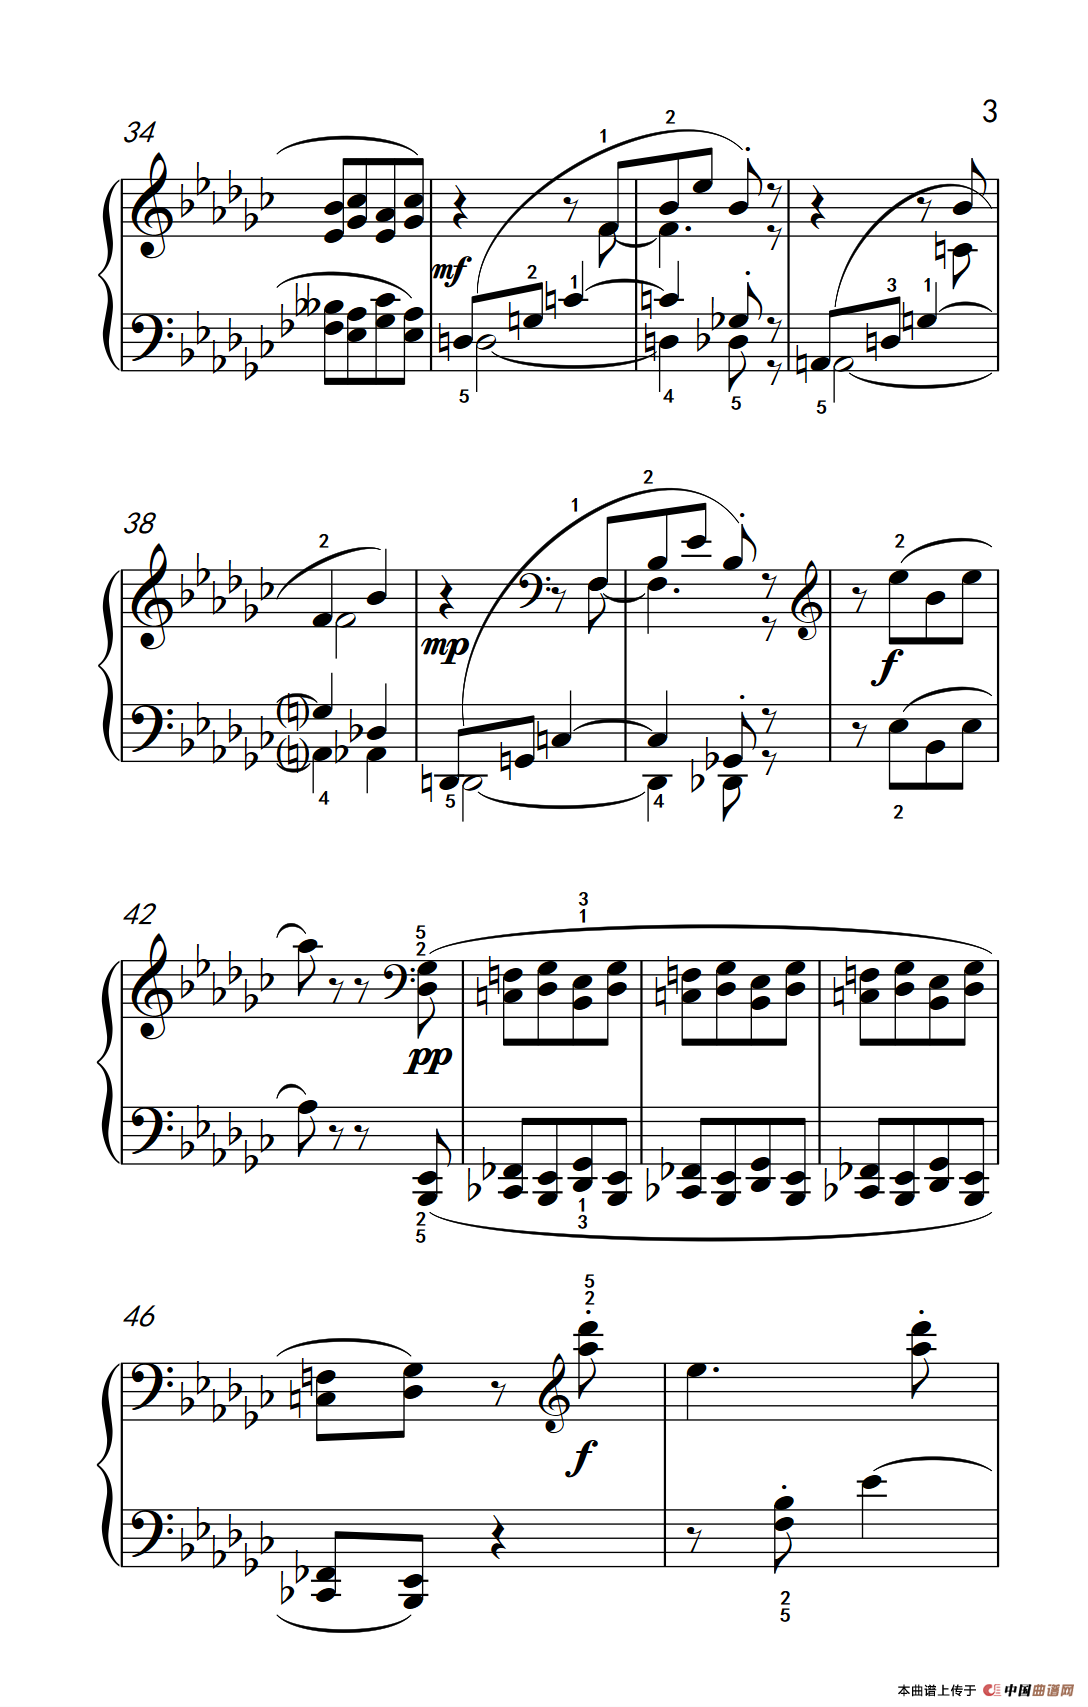 《四度音程》钢琴曲谱图分享